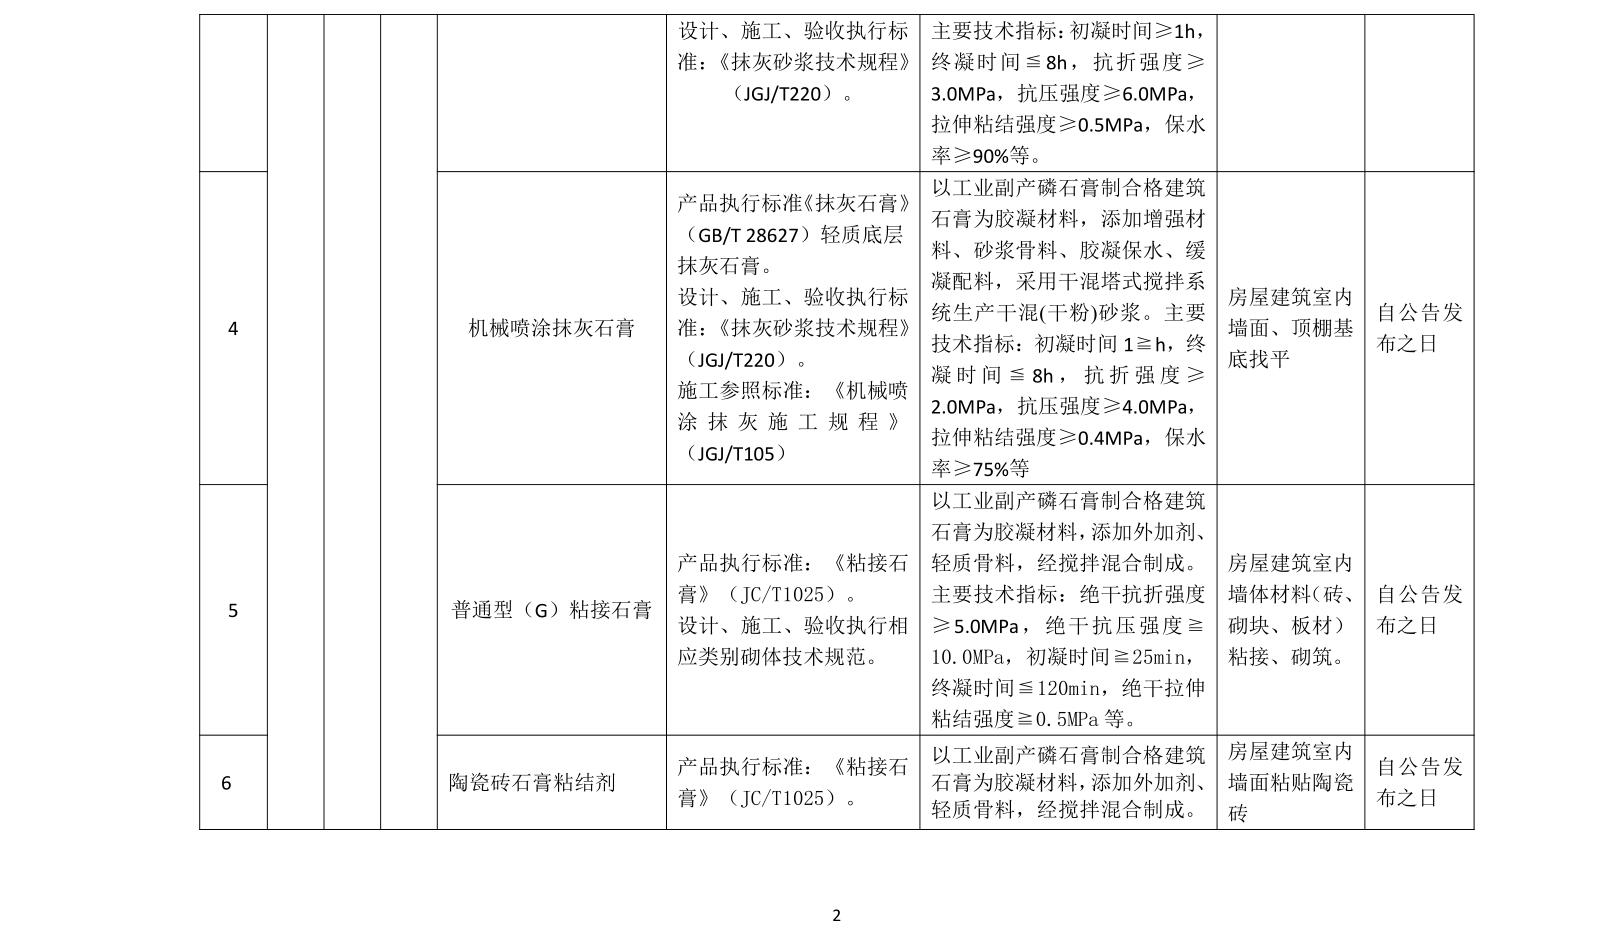 转发关于贵州省住房和城乡建设部《关于印发贵州省住房城乡建设领域“十三五”推广应用和限制、禁止使用技术目录》（第一批）的通知6.jpg